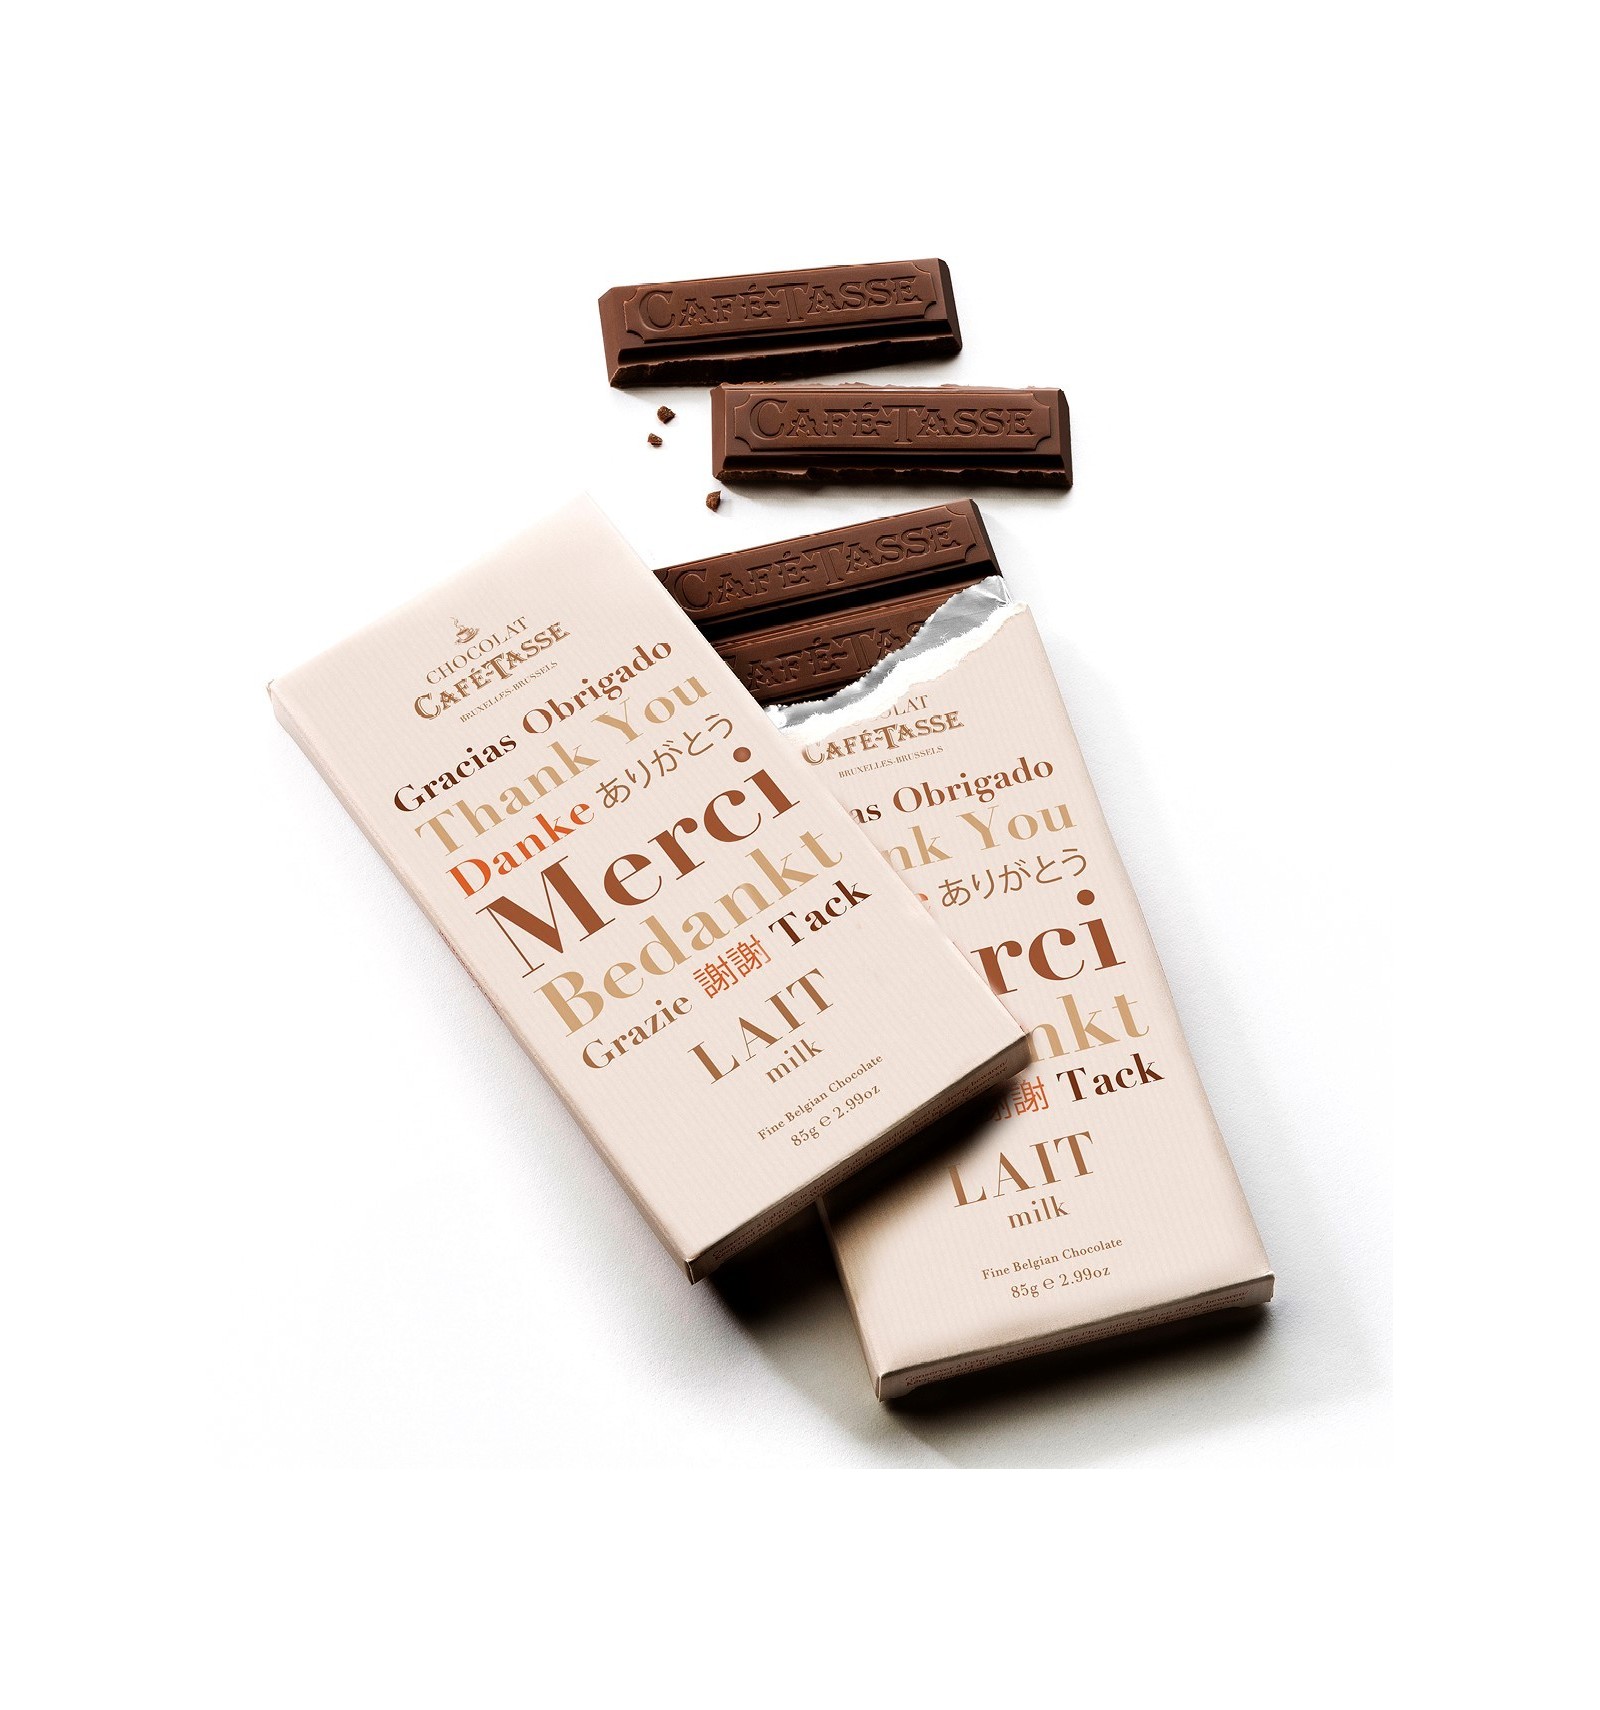 Onregelmatigheden badge slank Melk chocolade tablet bedankt editie